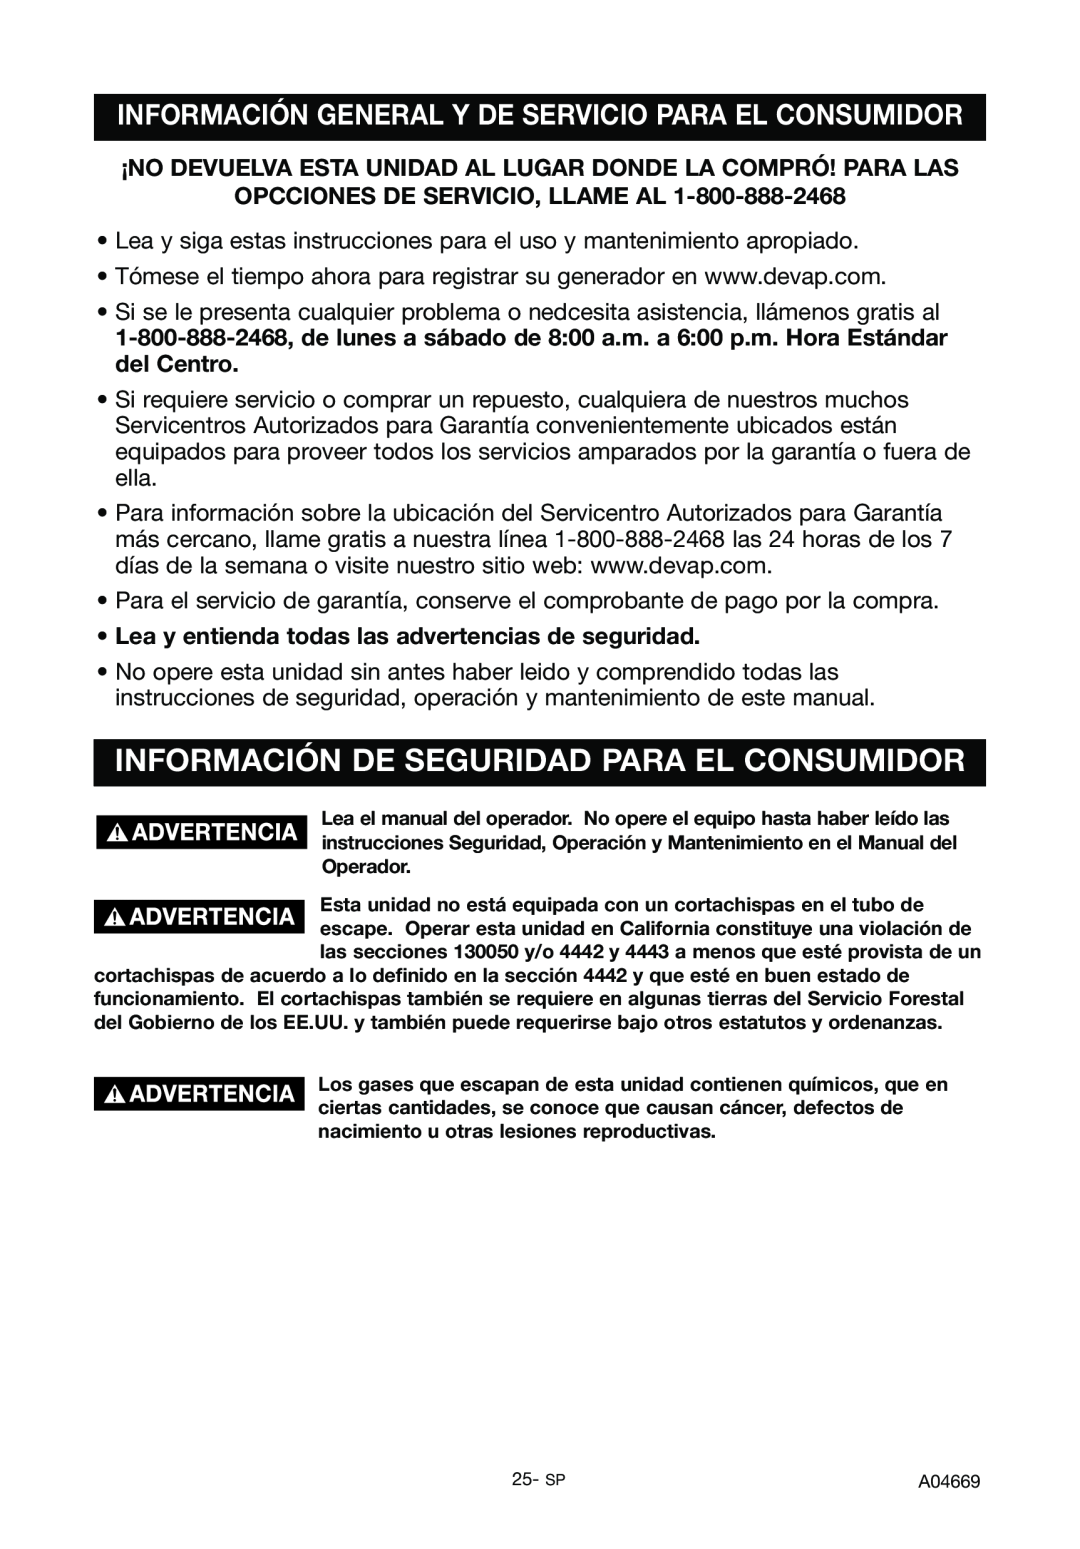 DeVillbiss Air Power Company A04669, GM1000 specifications Información De Seguridad Para El Consumidor 